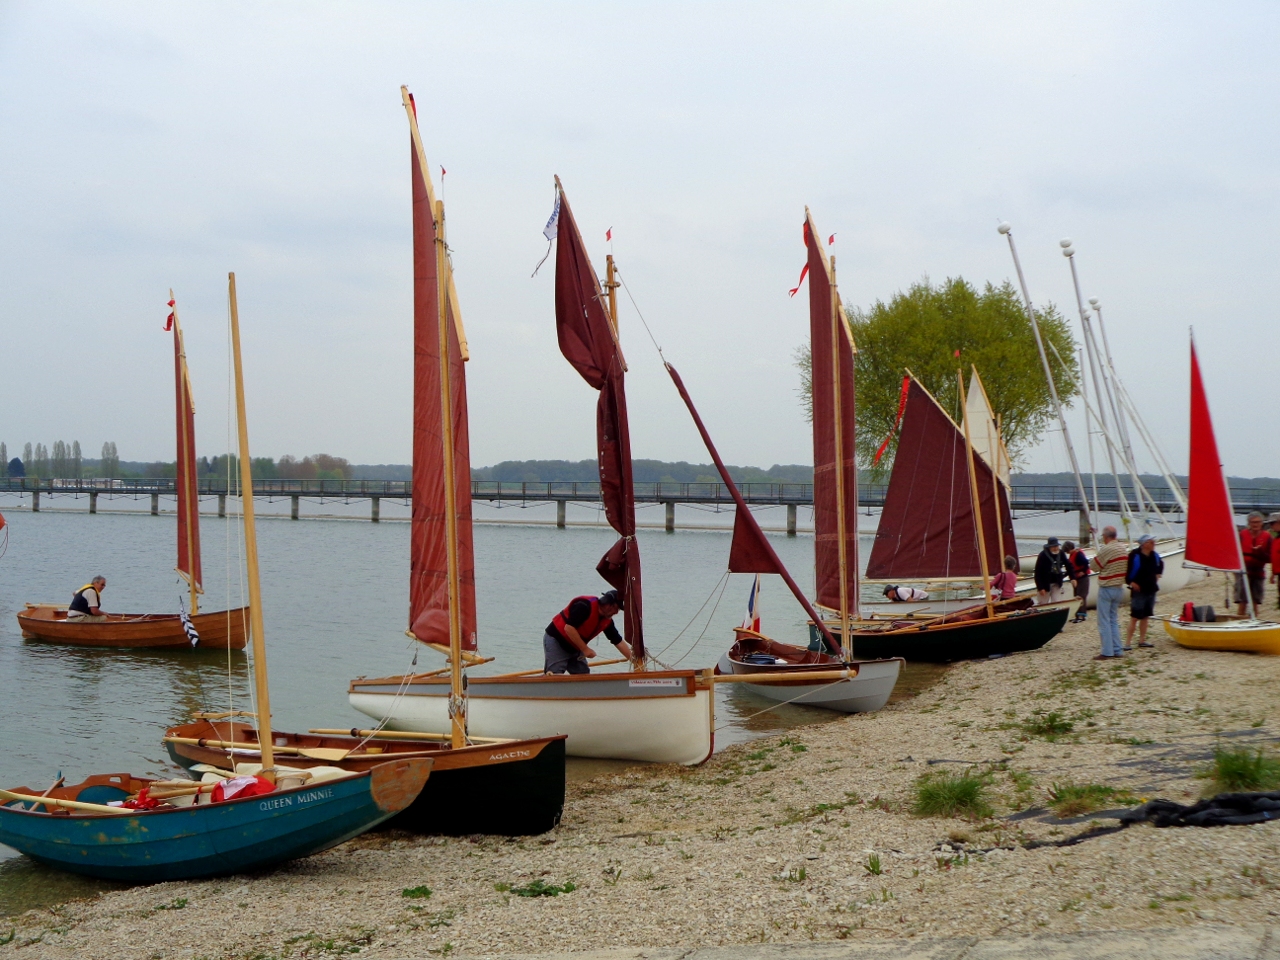 Fin d'après-midi, les bateaux reviennent au rivage pour s'abreuver au bord de l'eau (enfin, ce sont plutôt les skippers qui ont l'intention de s'abreuver...) 